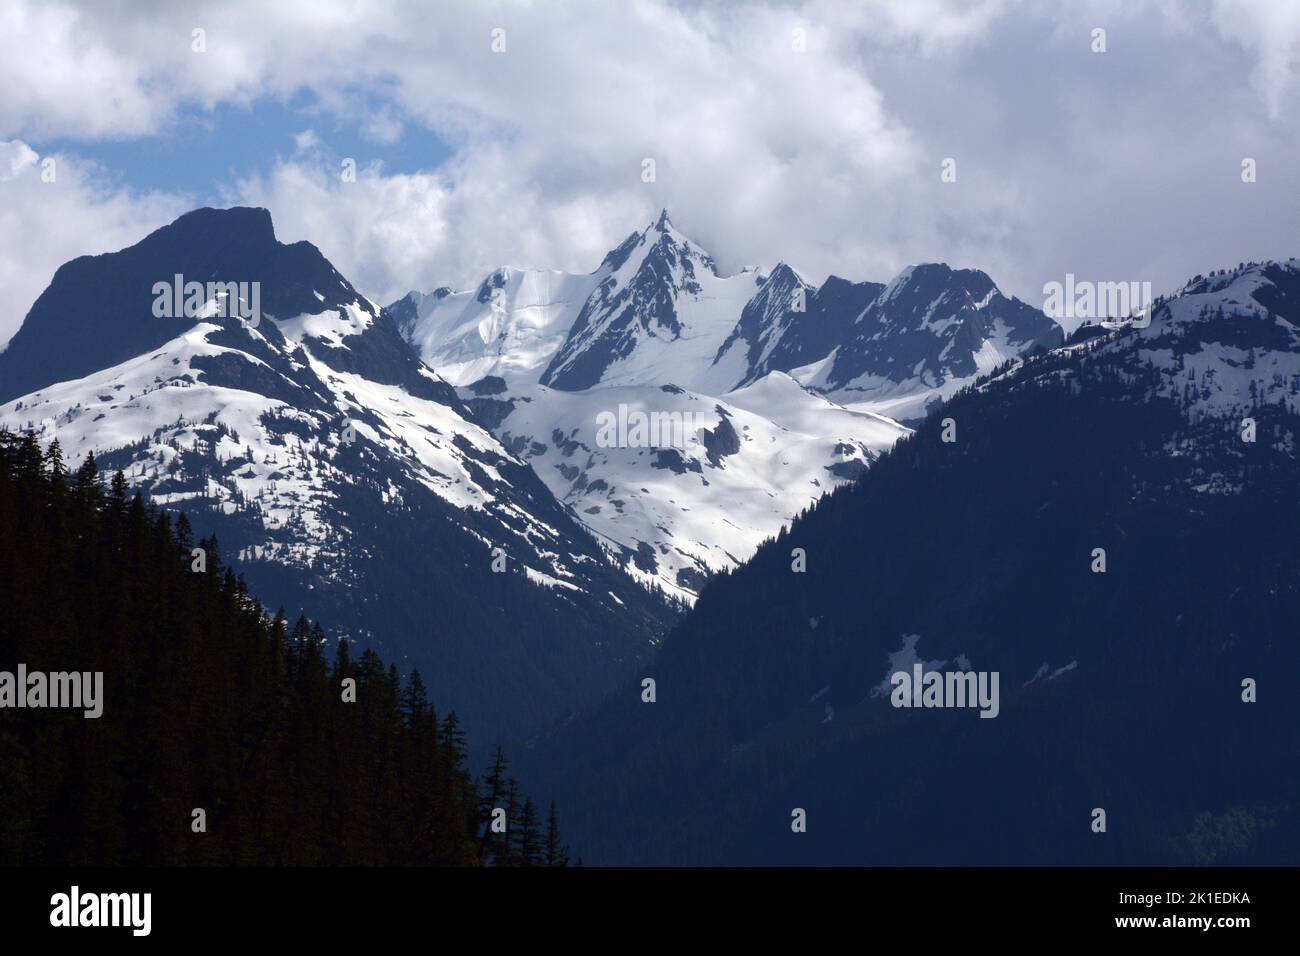 La cima glaciada del Monte Tantalus en la Cordillera Tantalus de las Montañas Costeras sobre el Valle Squamish, British Columbia, Canadá. Foto de stock